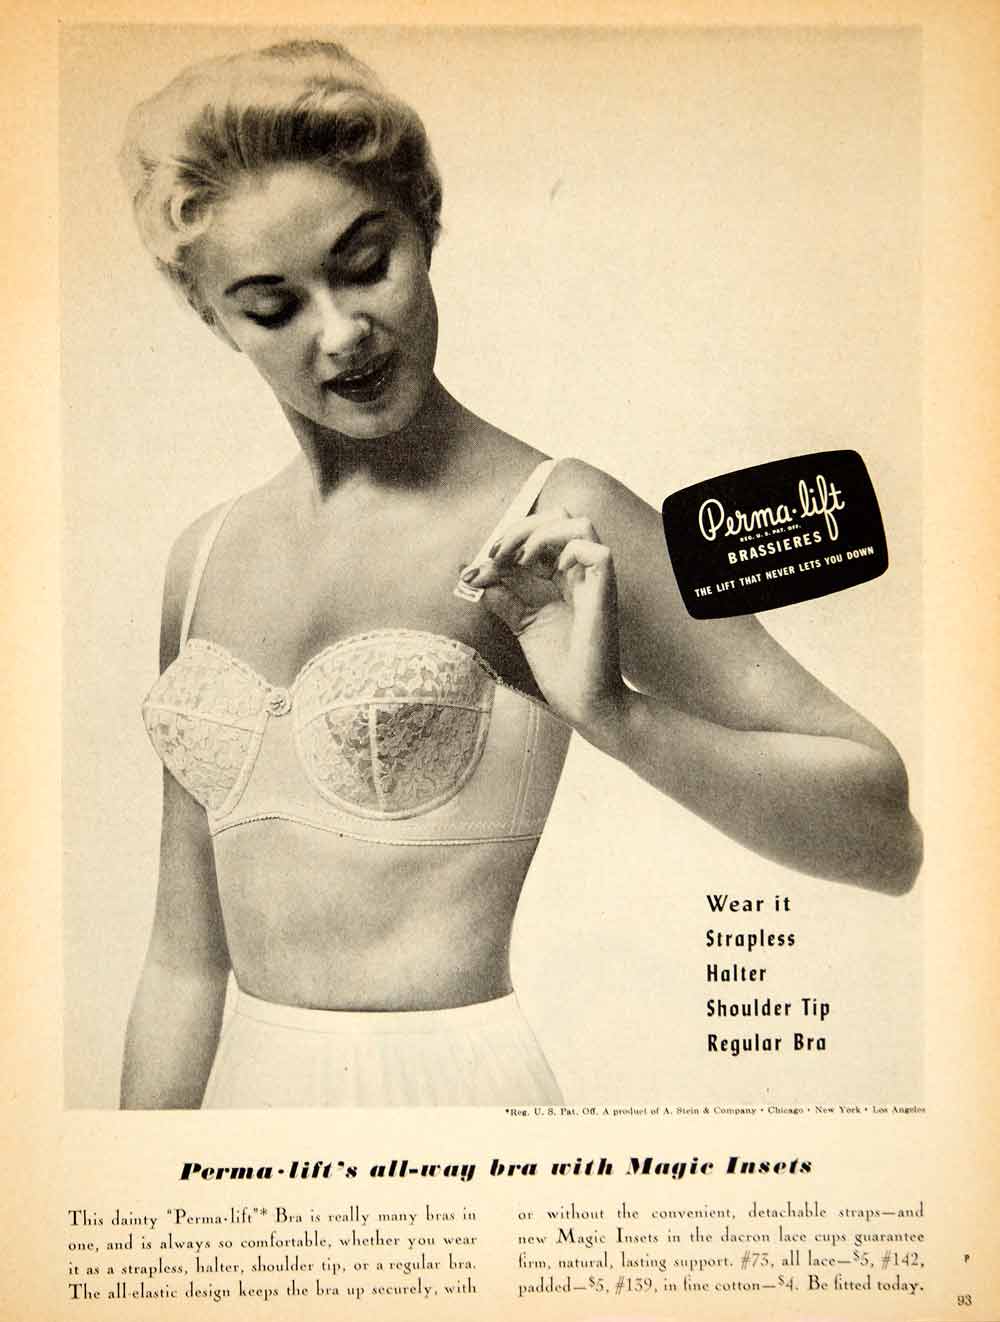 1944 Ad Vintage Formfit Life-Bra Bra Brassiere Underwear Lingerie